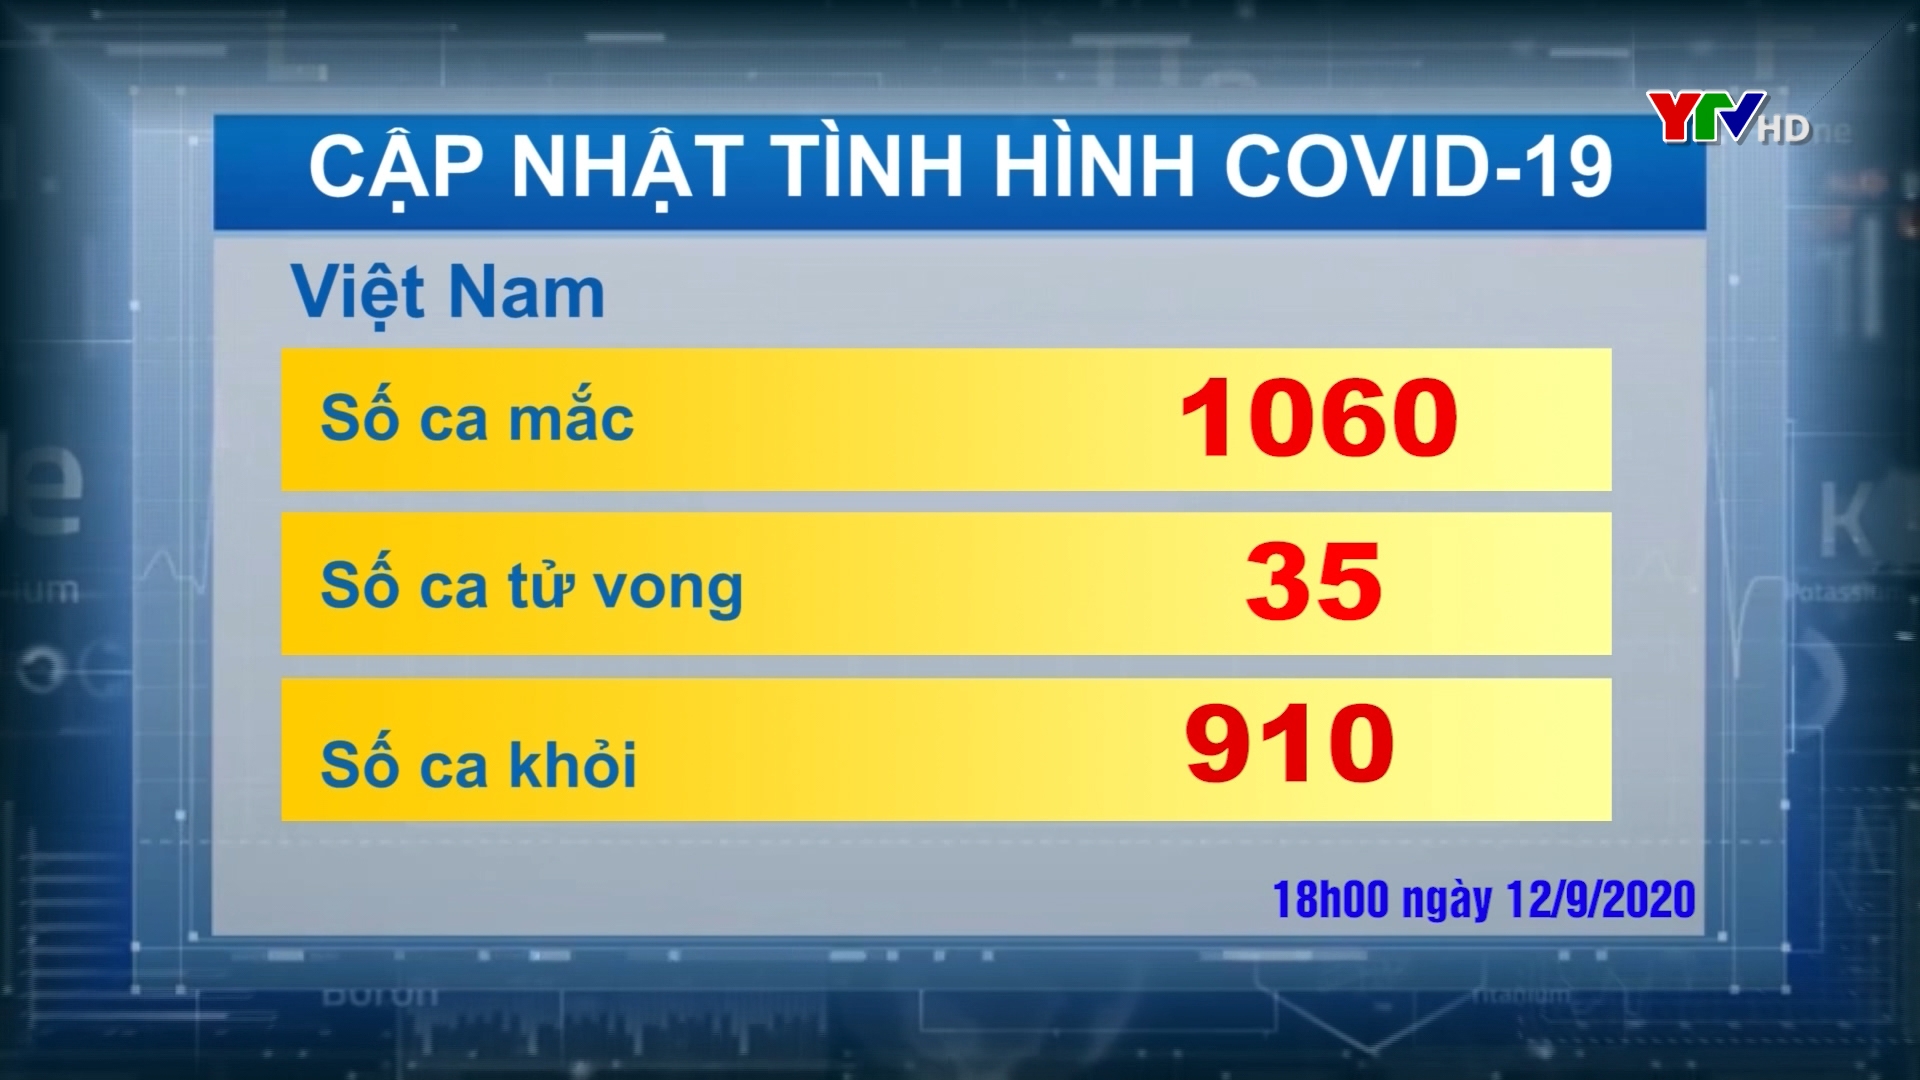 Số ca nhiễm COVID - 19 ở Việt Nam là 1060 trường hợp